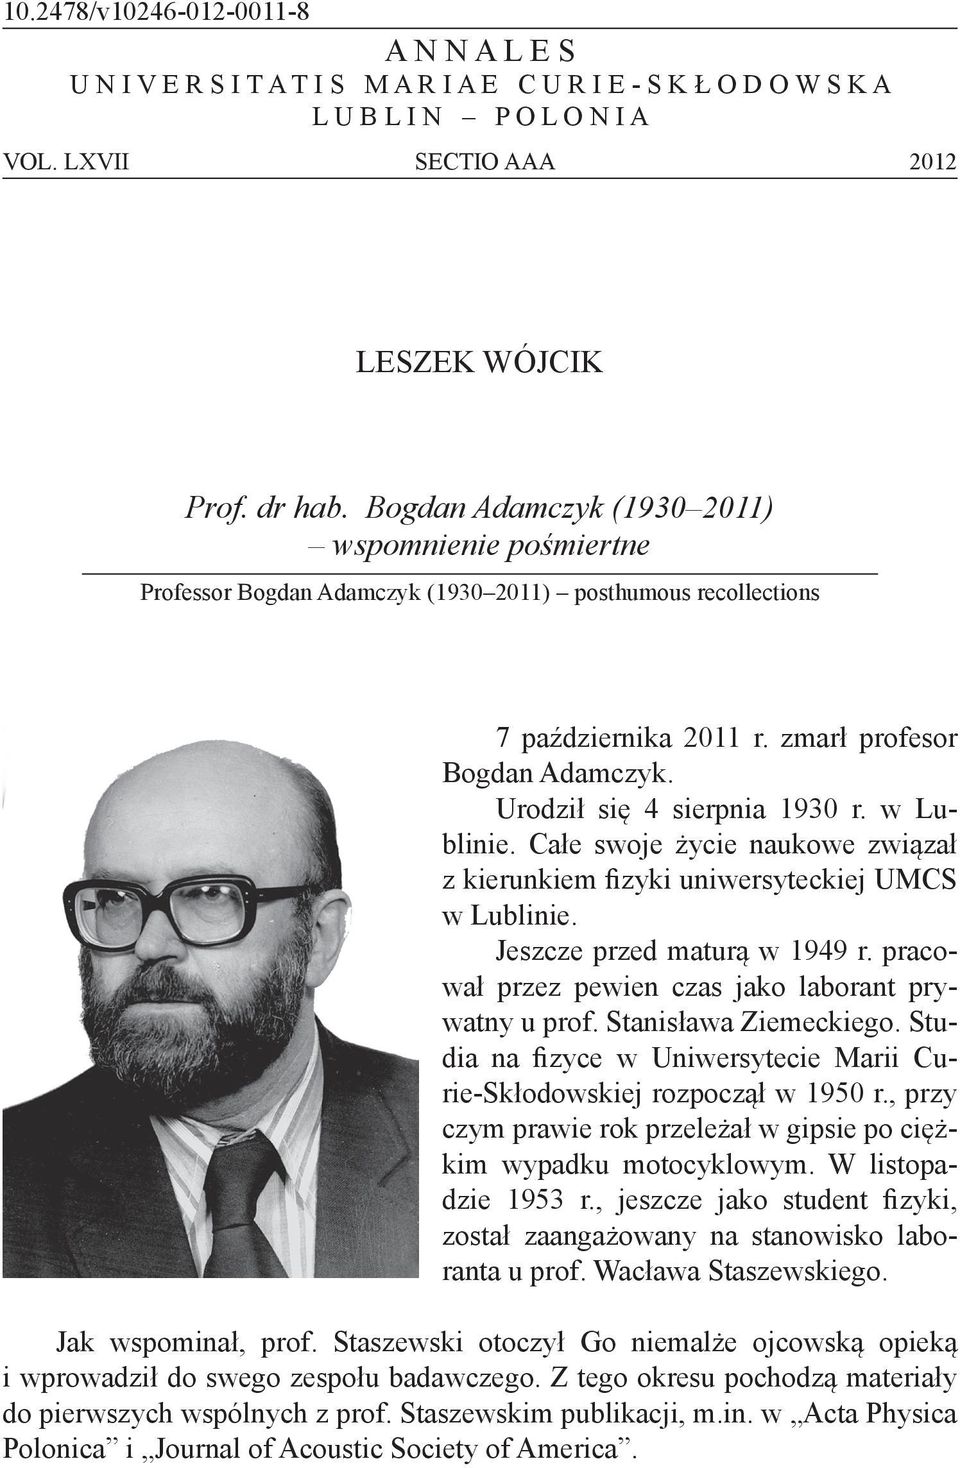 Całe swoje życe naukowe zwązał z kerunkem fzyk unwersyteckej UMCS w Lublne. Jeszcze przed maturą w 1949 r. pracował przez pewen czas jako laborant prywatny u prof. Stansława Zemeckego.